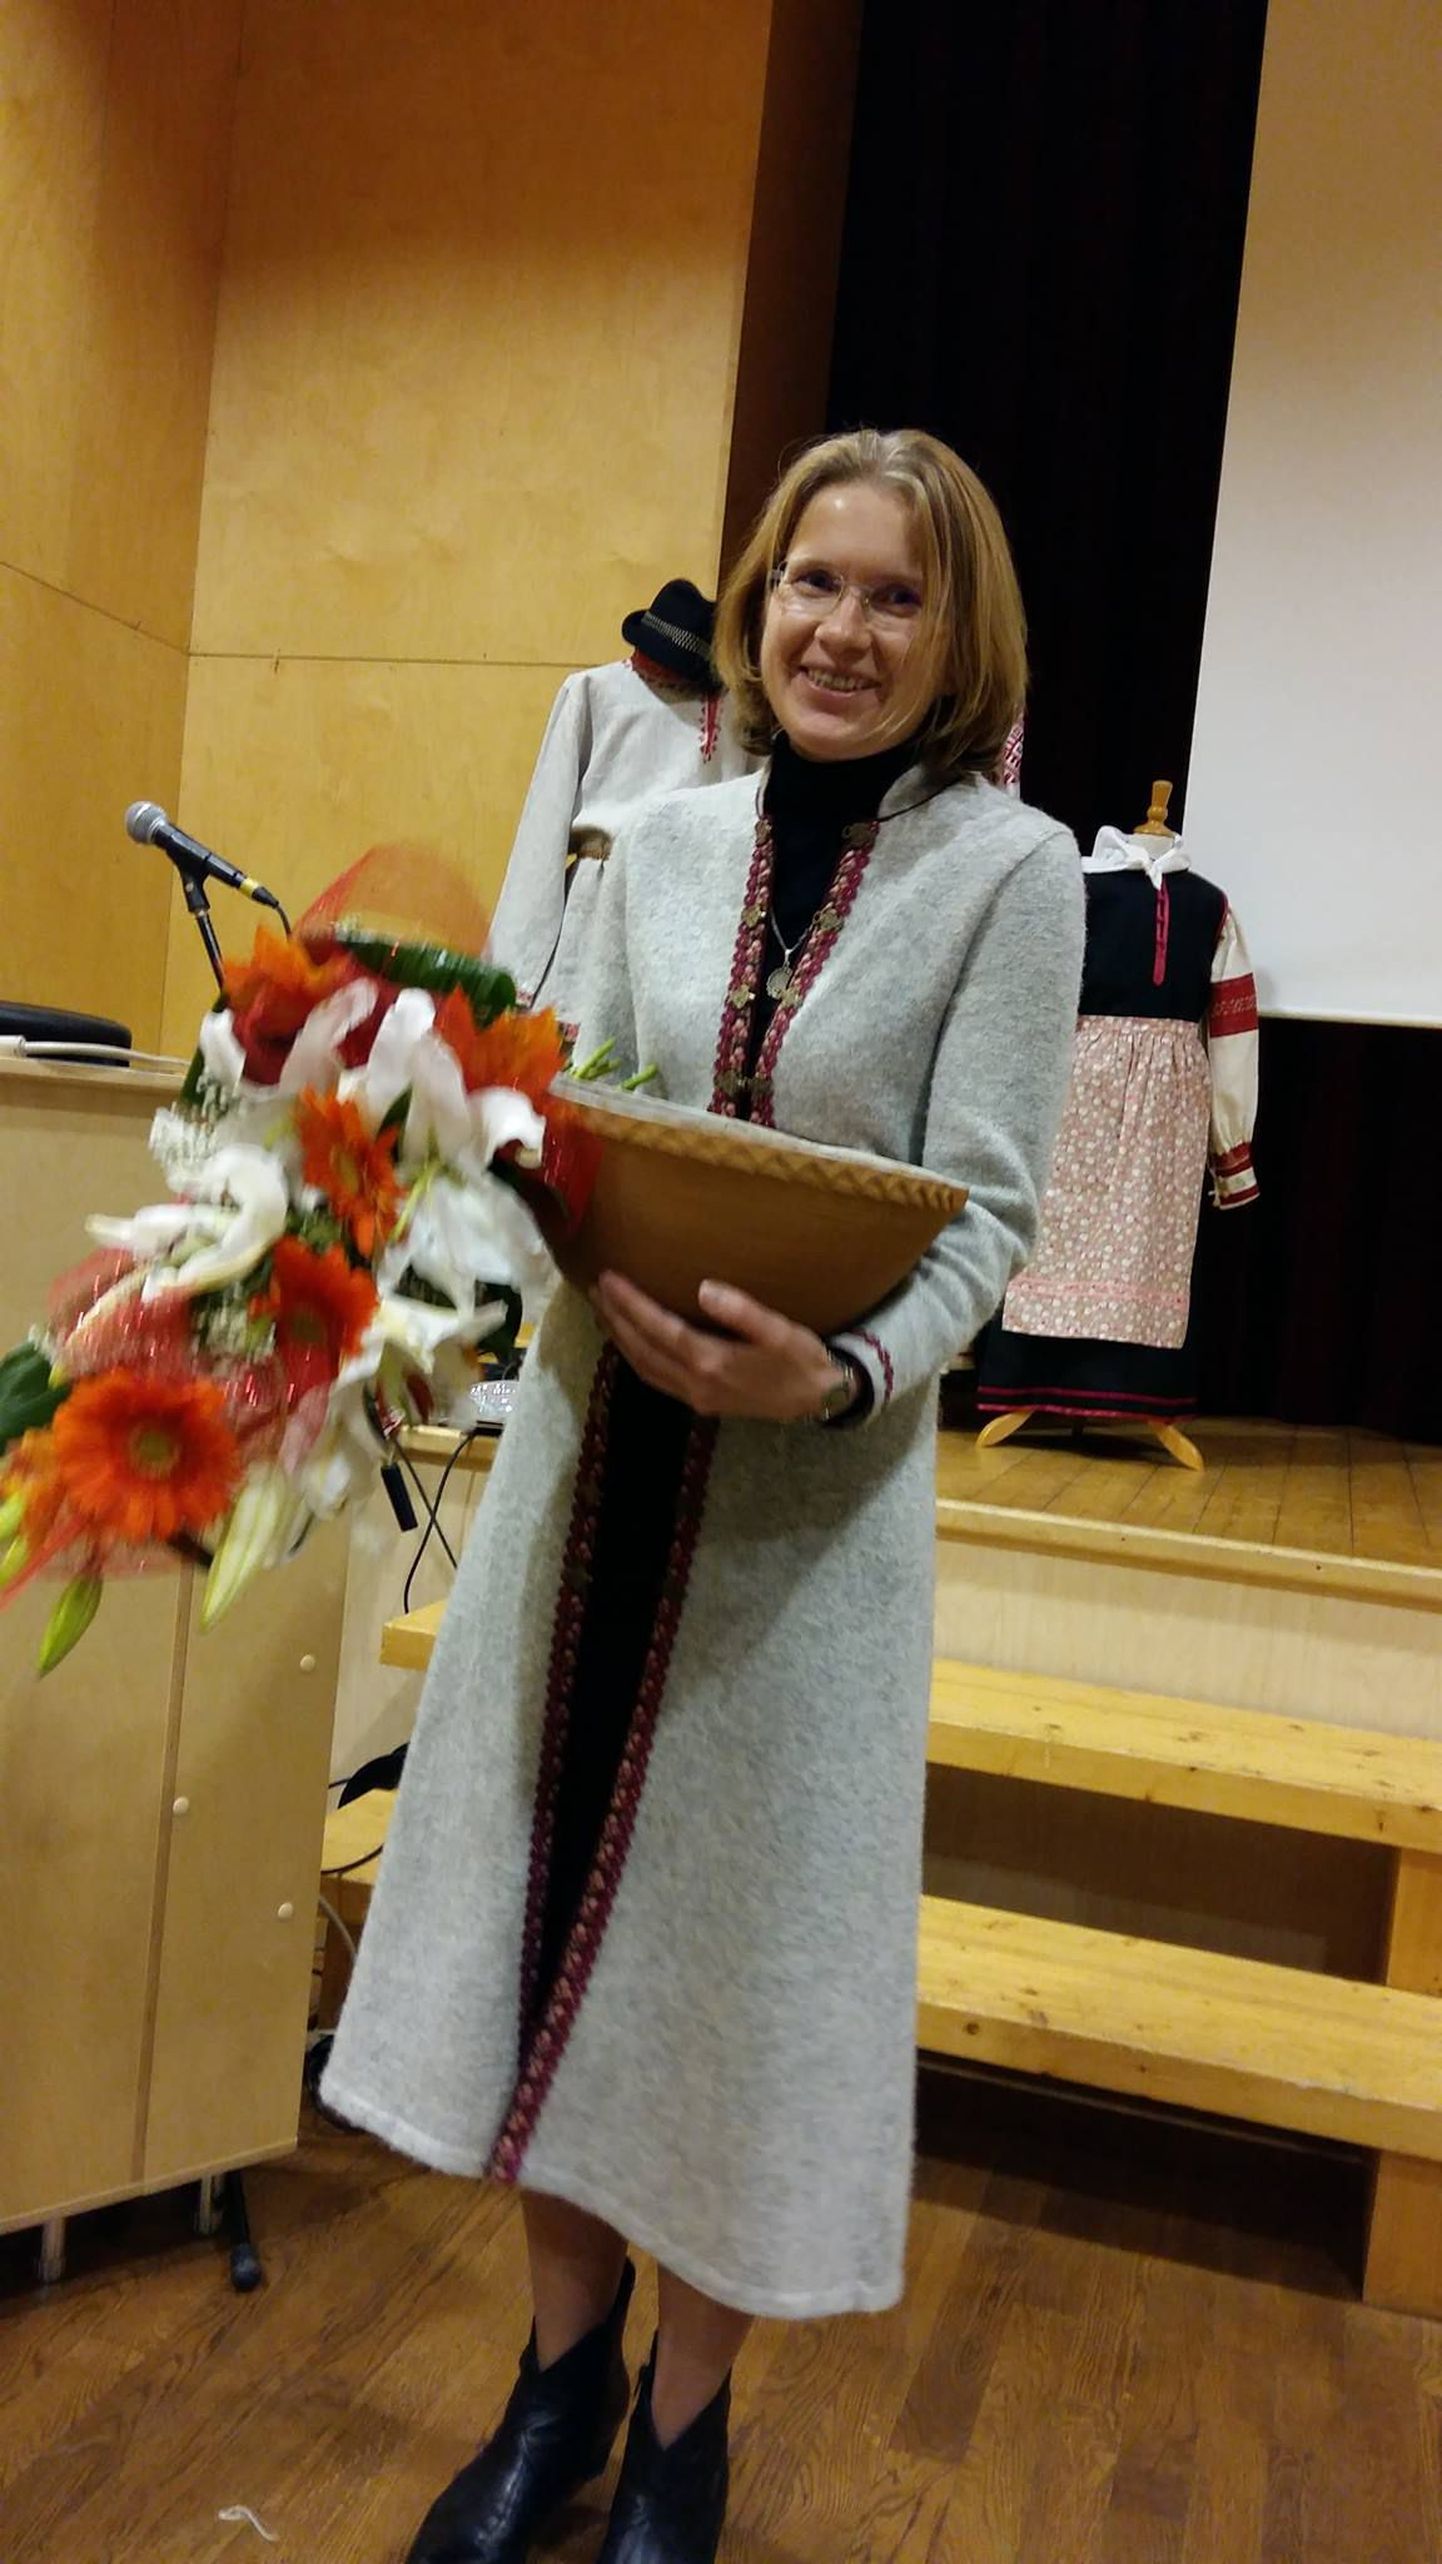 Aasta käsitööettevõtjaks 2016 valiti Margit Mehilane